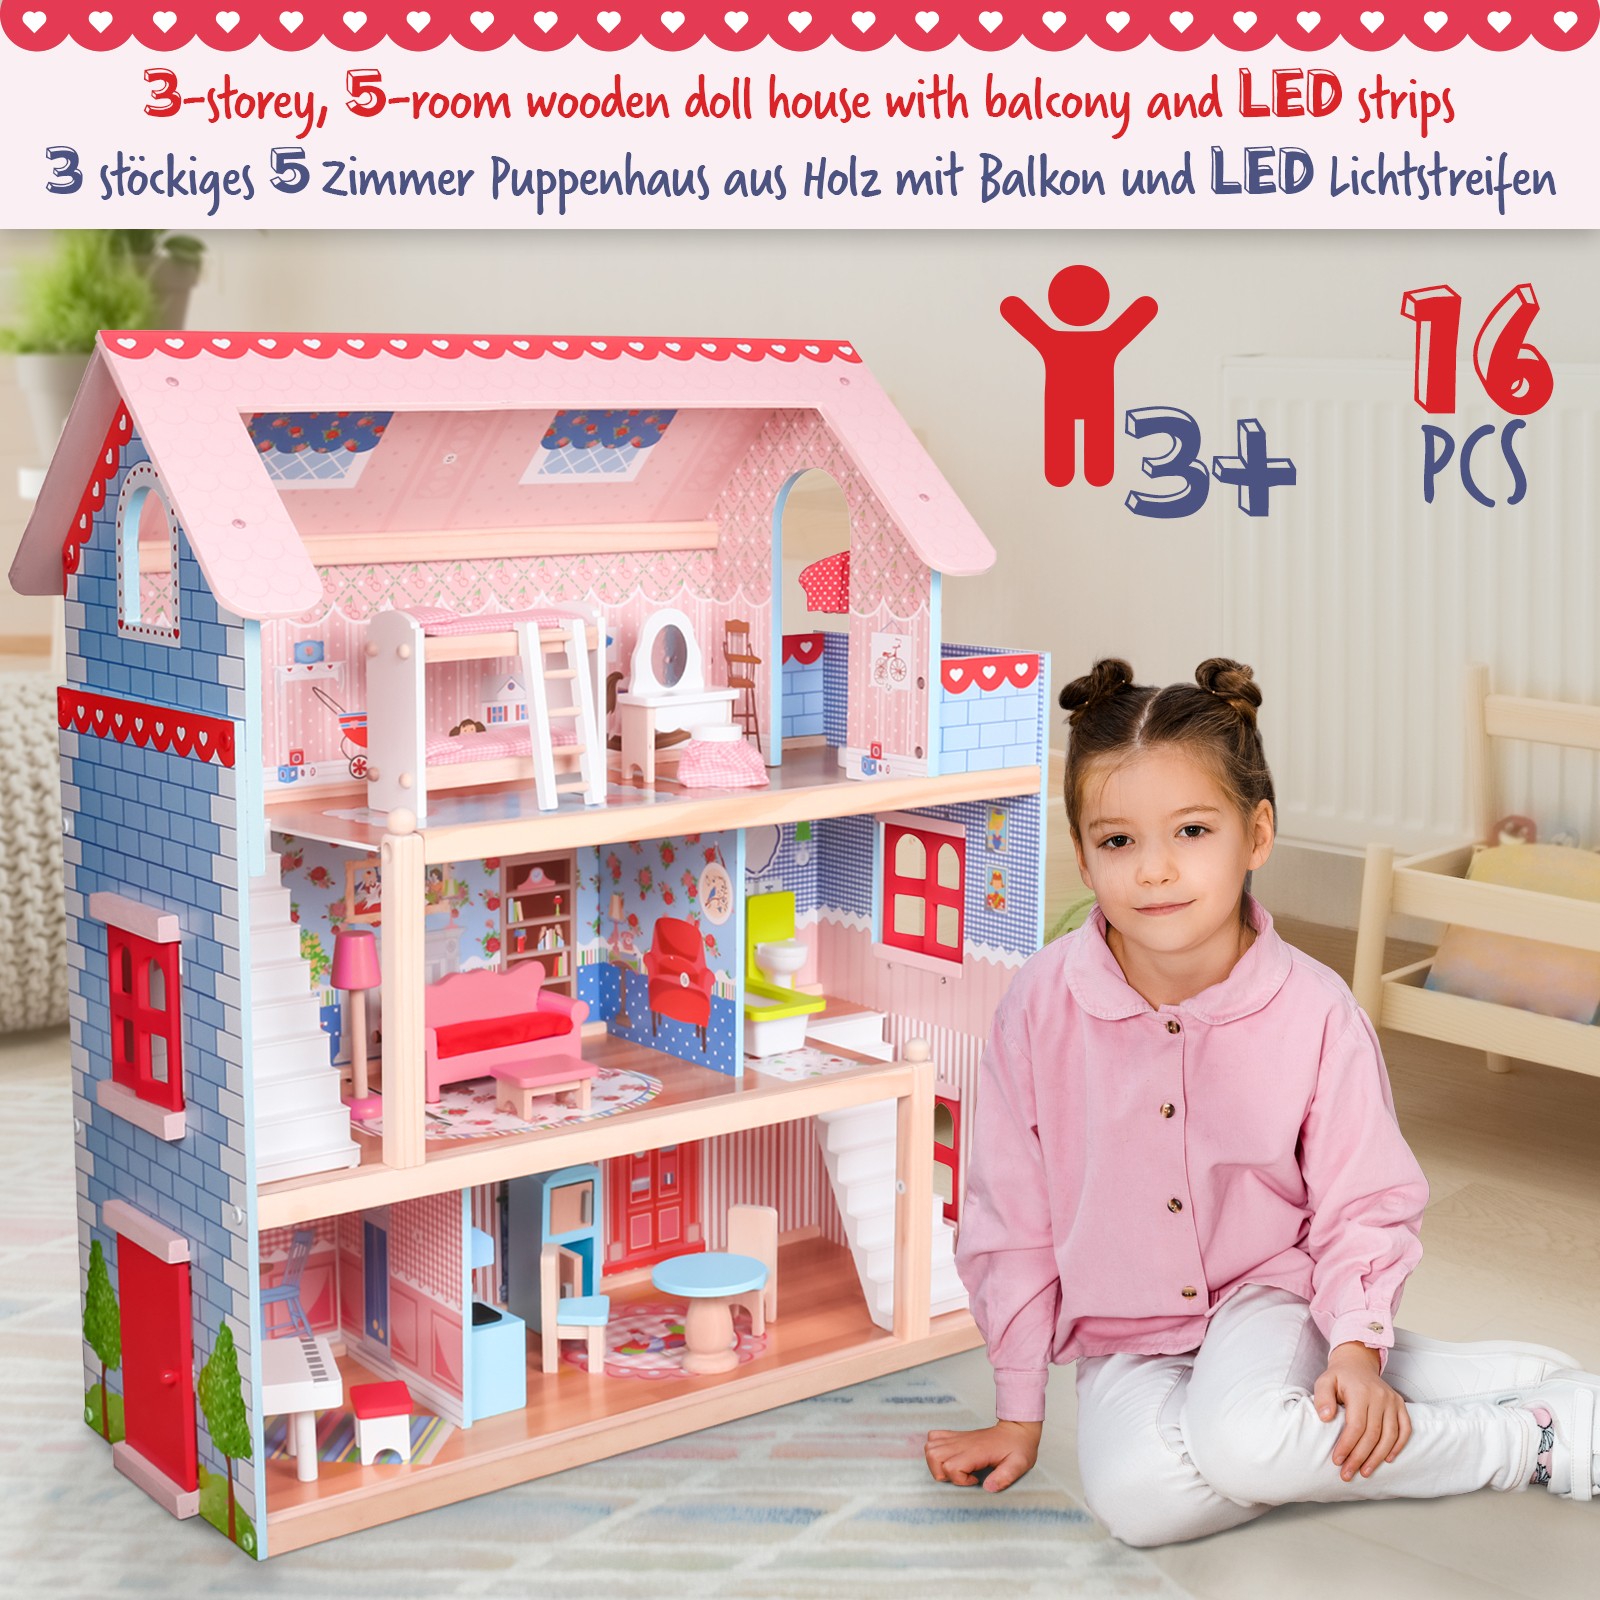 Infantastic - Houten Poppenhuis XXL - LED-verlichting - 3 speelniveaus - Inclusief meubels - voor kinderen - 61 x 33 cm. - Webshop-outlet.nl | Aanbiedingen OUTLET prijzen!